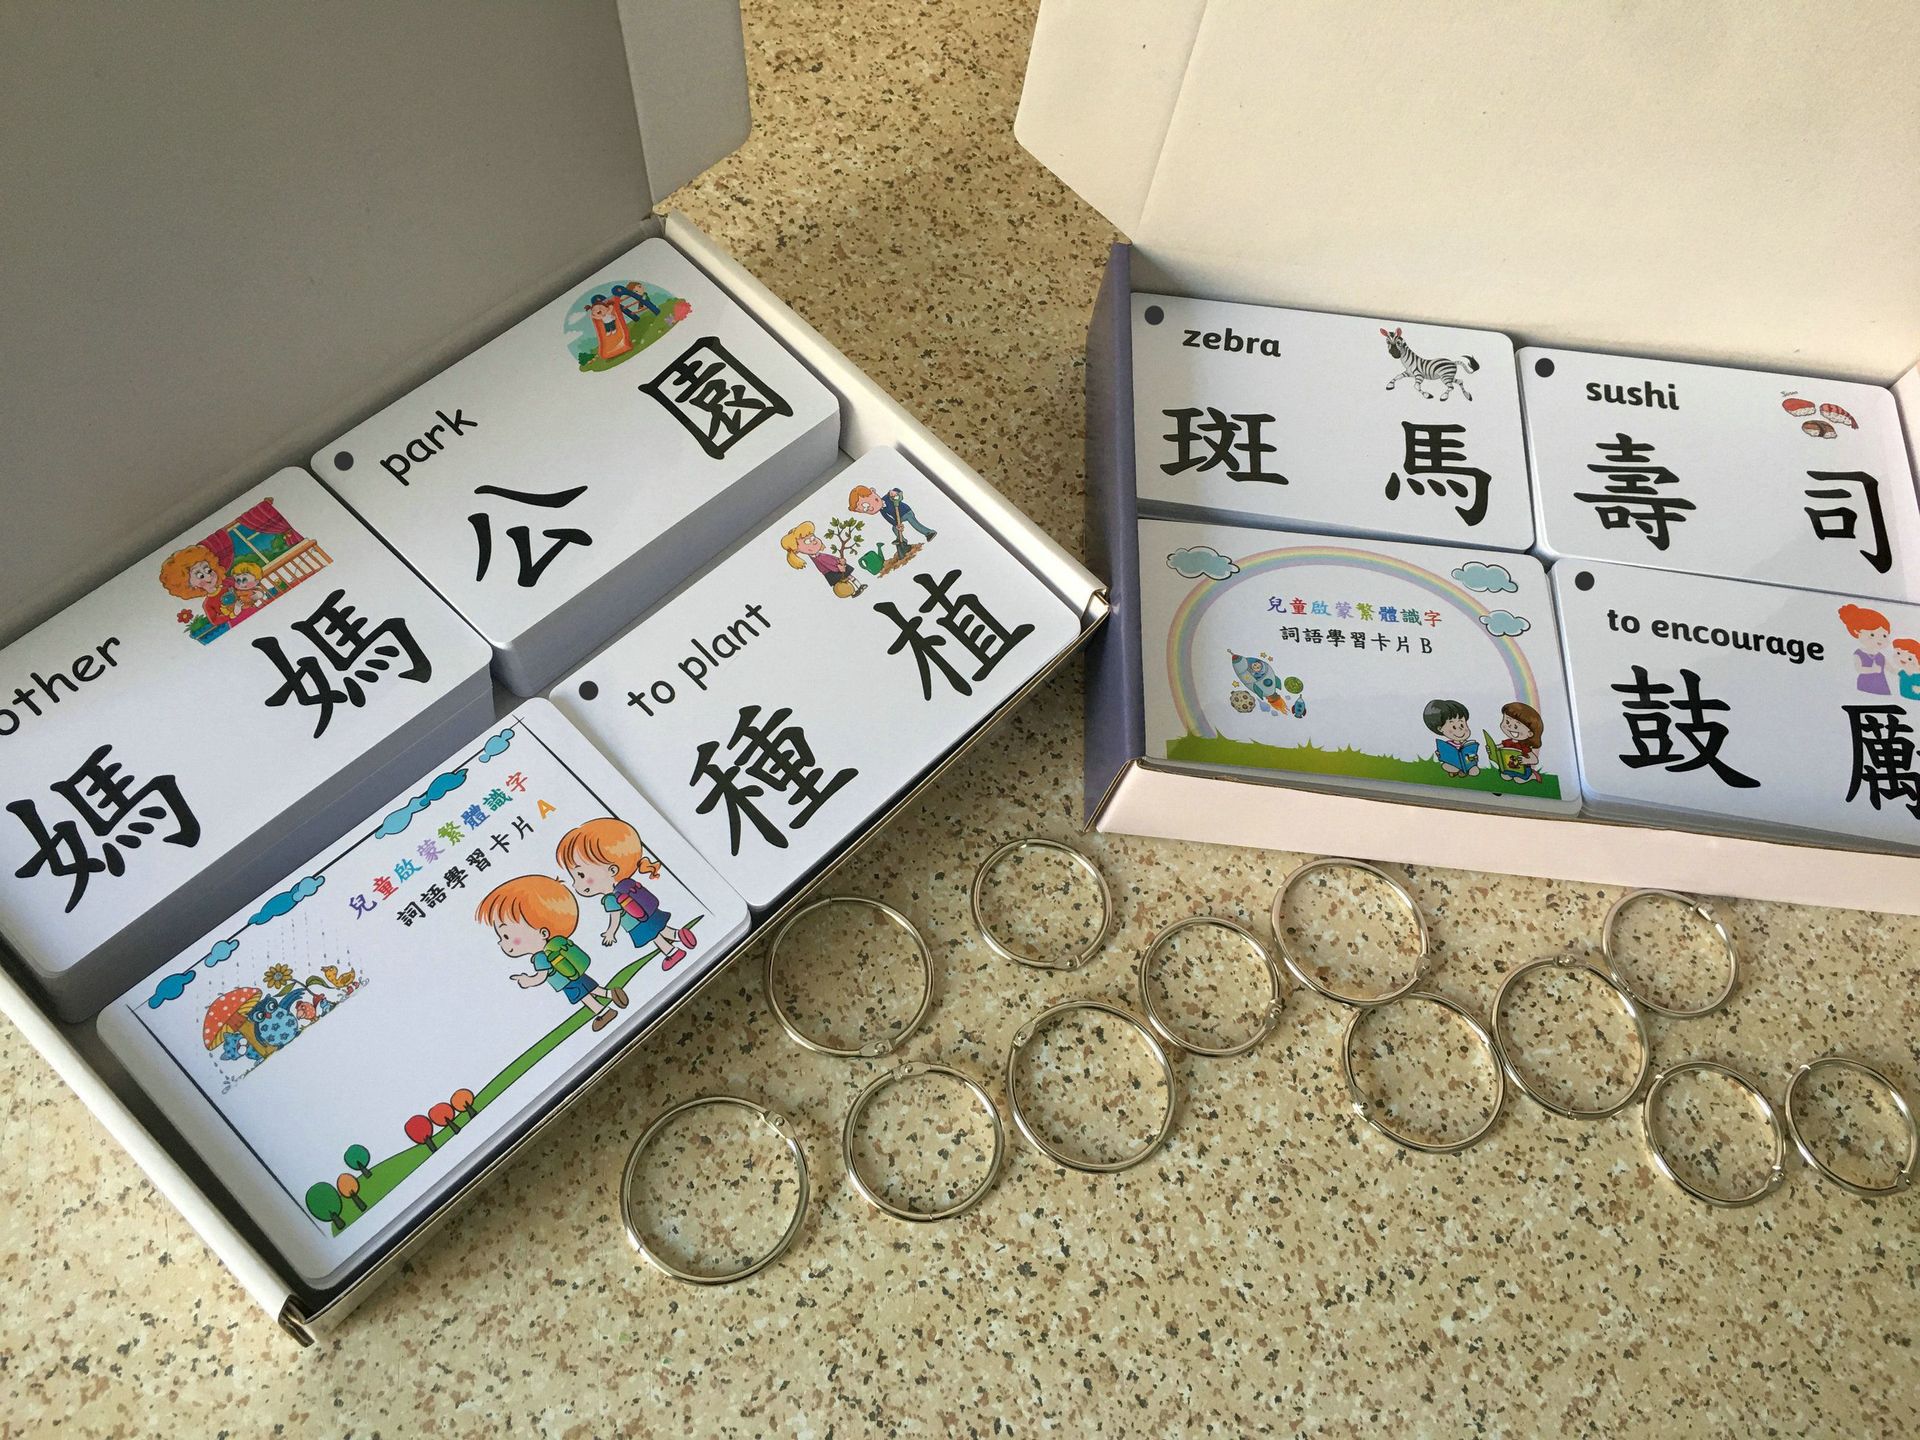 繁體中文識字卡臺灣香港幼兒學習帶圖字咭兒童認字早教啟蒙閃卡